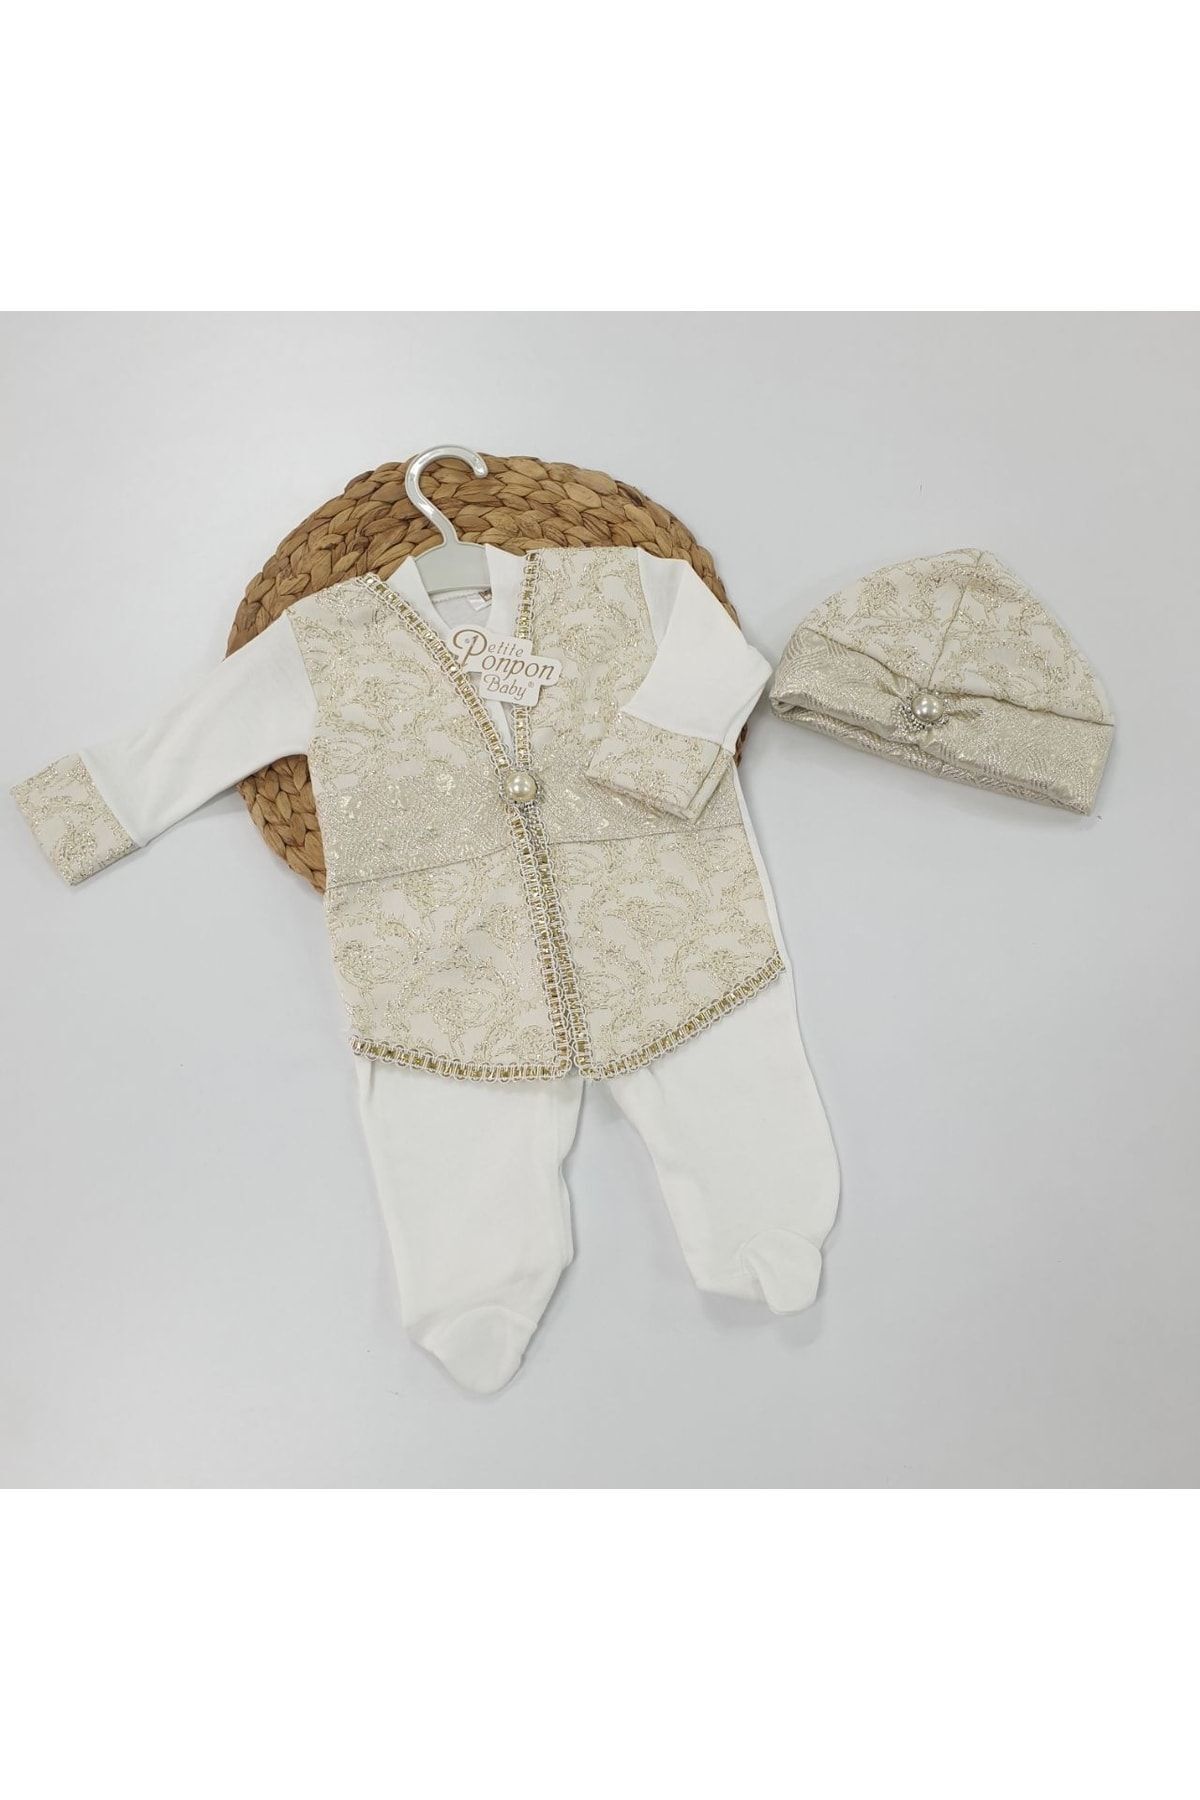 Petite Ponpon Baby Erkek Bebek Mevlüt Kıyafeti, Sünnetlik